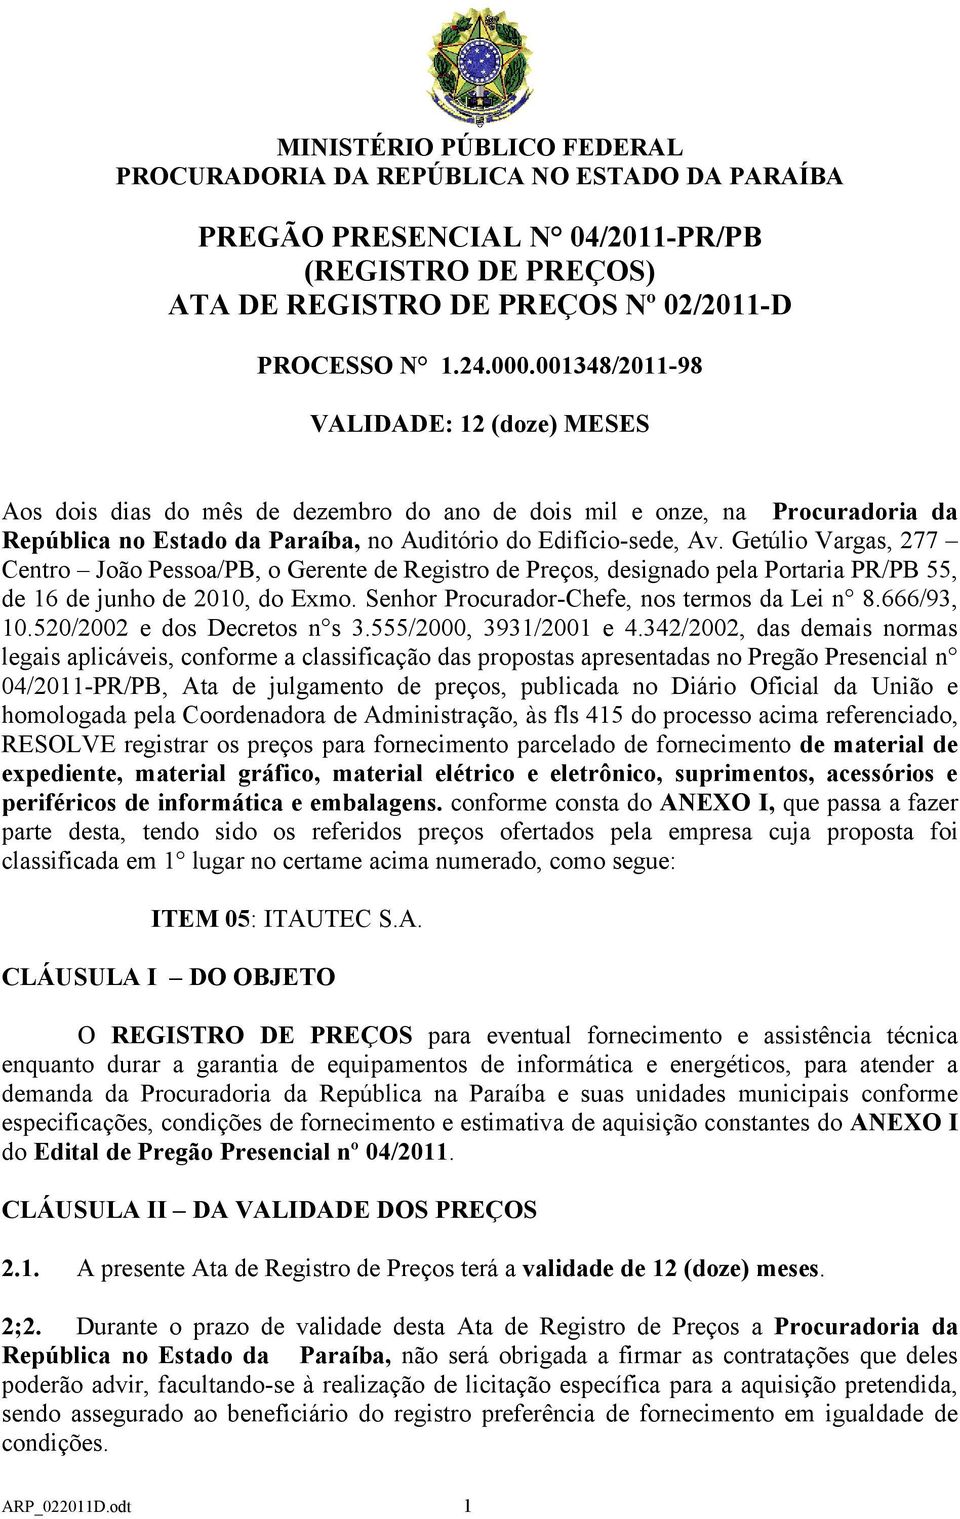 Getúlio Vargas, 277 Centro João Pessoa/PB, o Gerente de Registro de Preços, designado pela Portaria PR/PB 55, de 16 de junho de 2010, do Exmo. Senhor Procurador-Chefe, nos termos da Lei n 8.